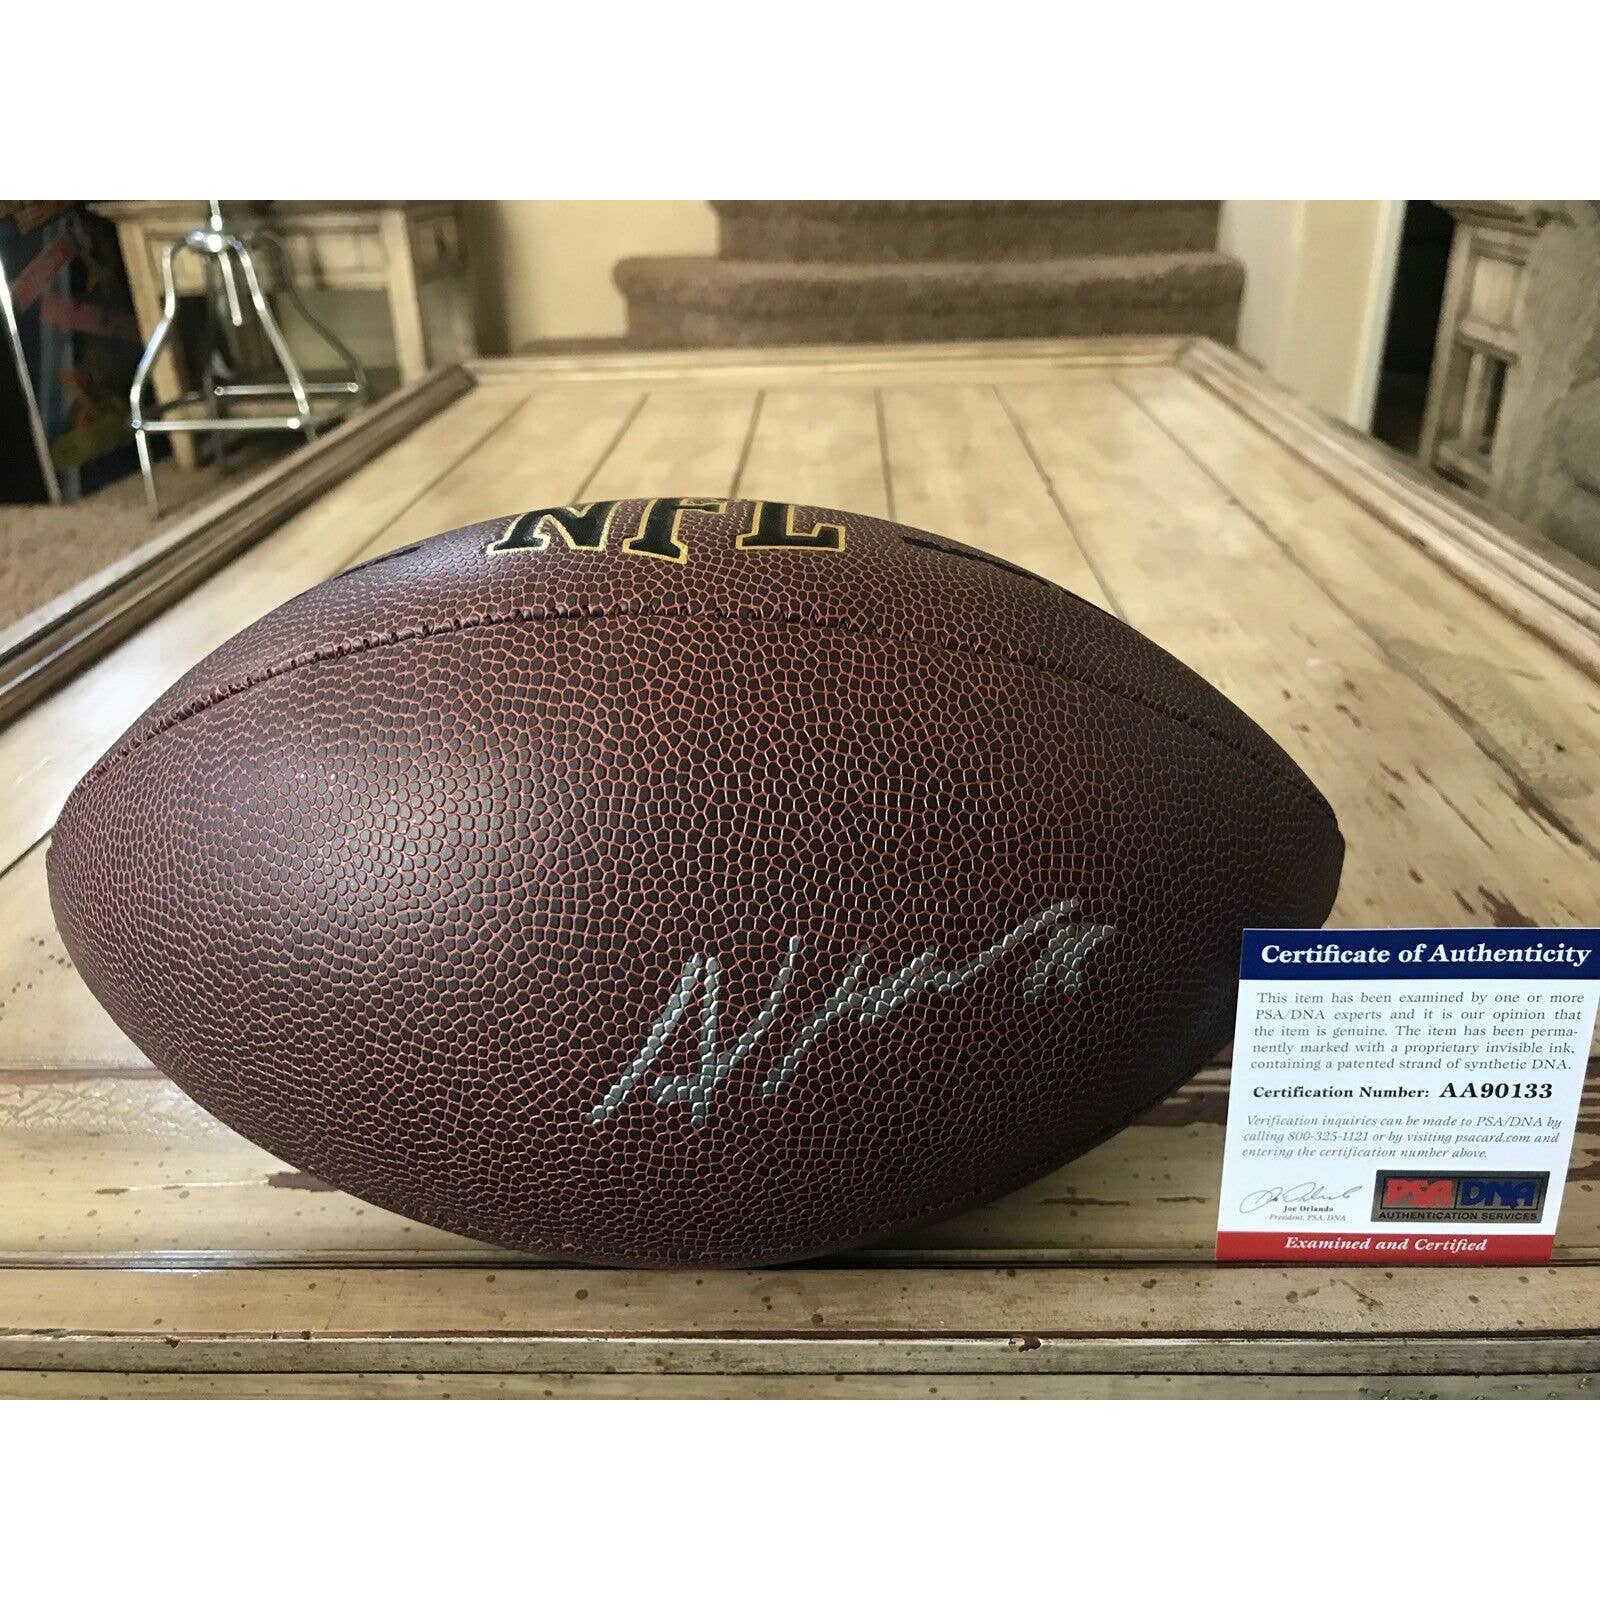 Allen Hurns Autographed/Signed Football PSA/DNA COA Dallas Cowboys Jaguars - TreasuresEvolved